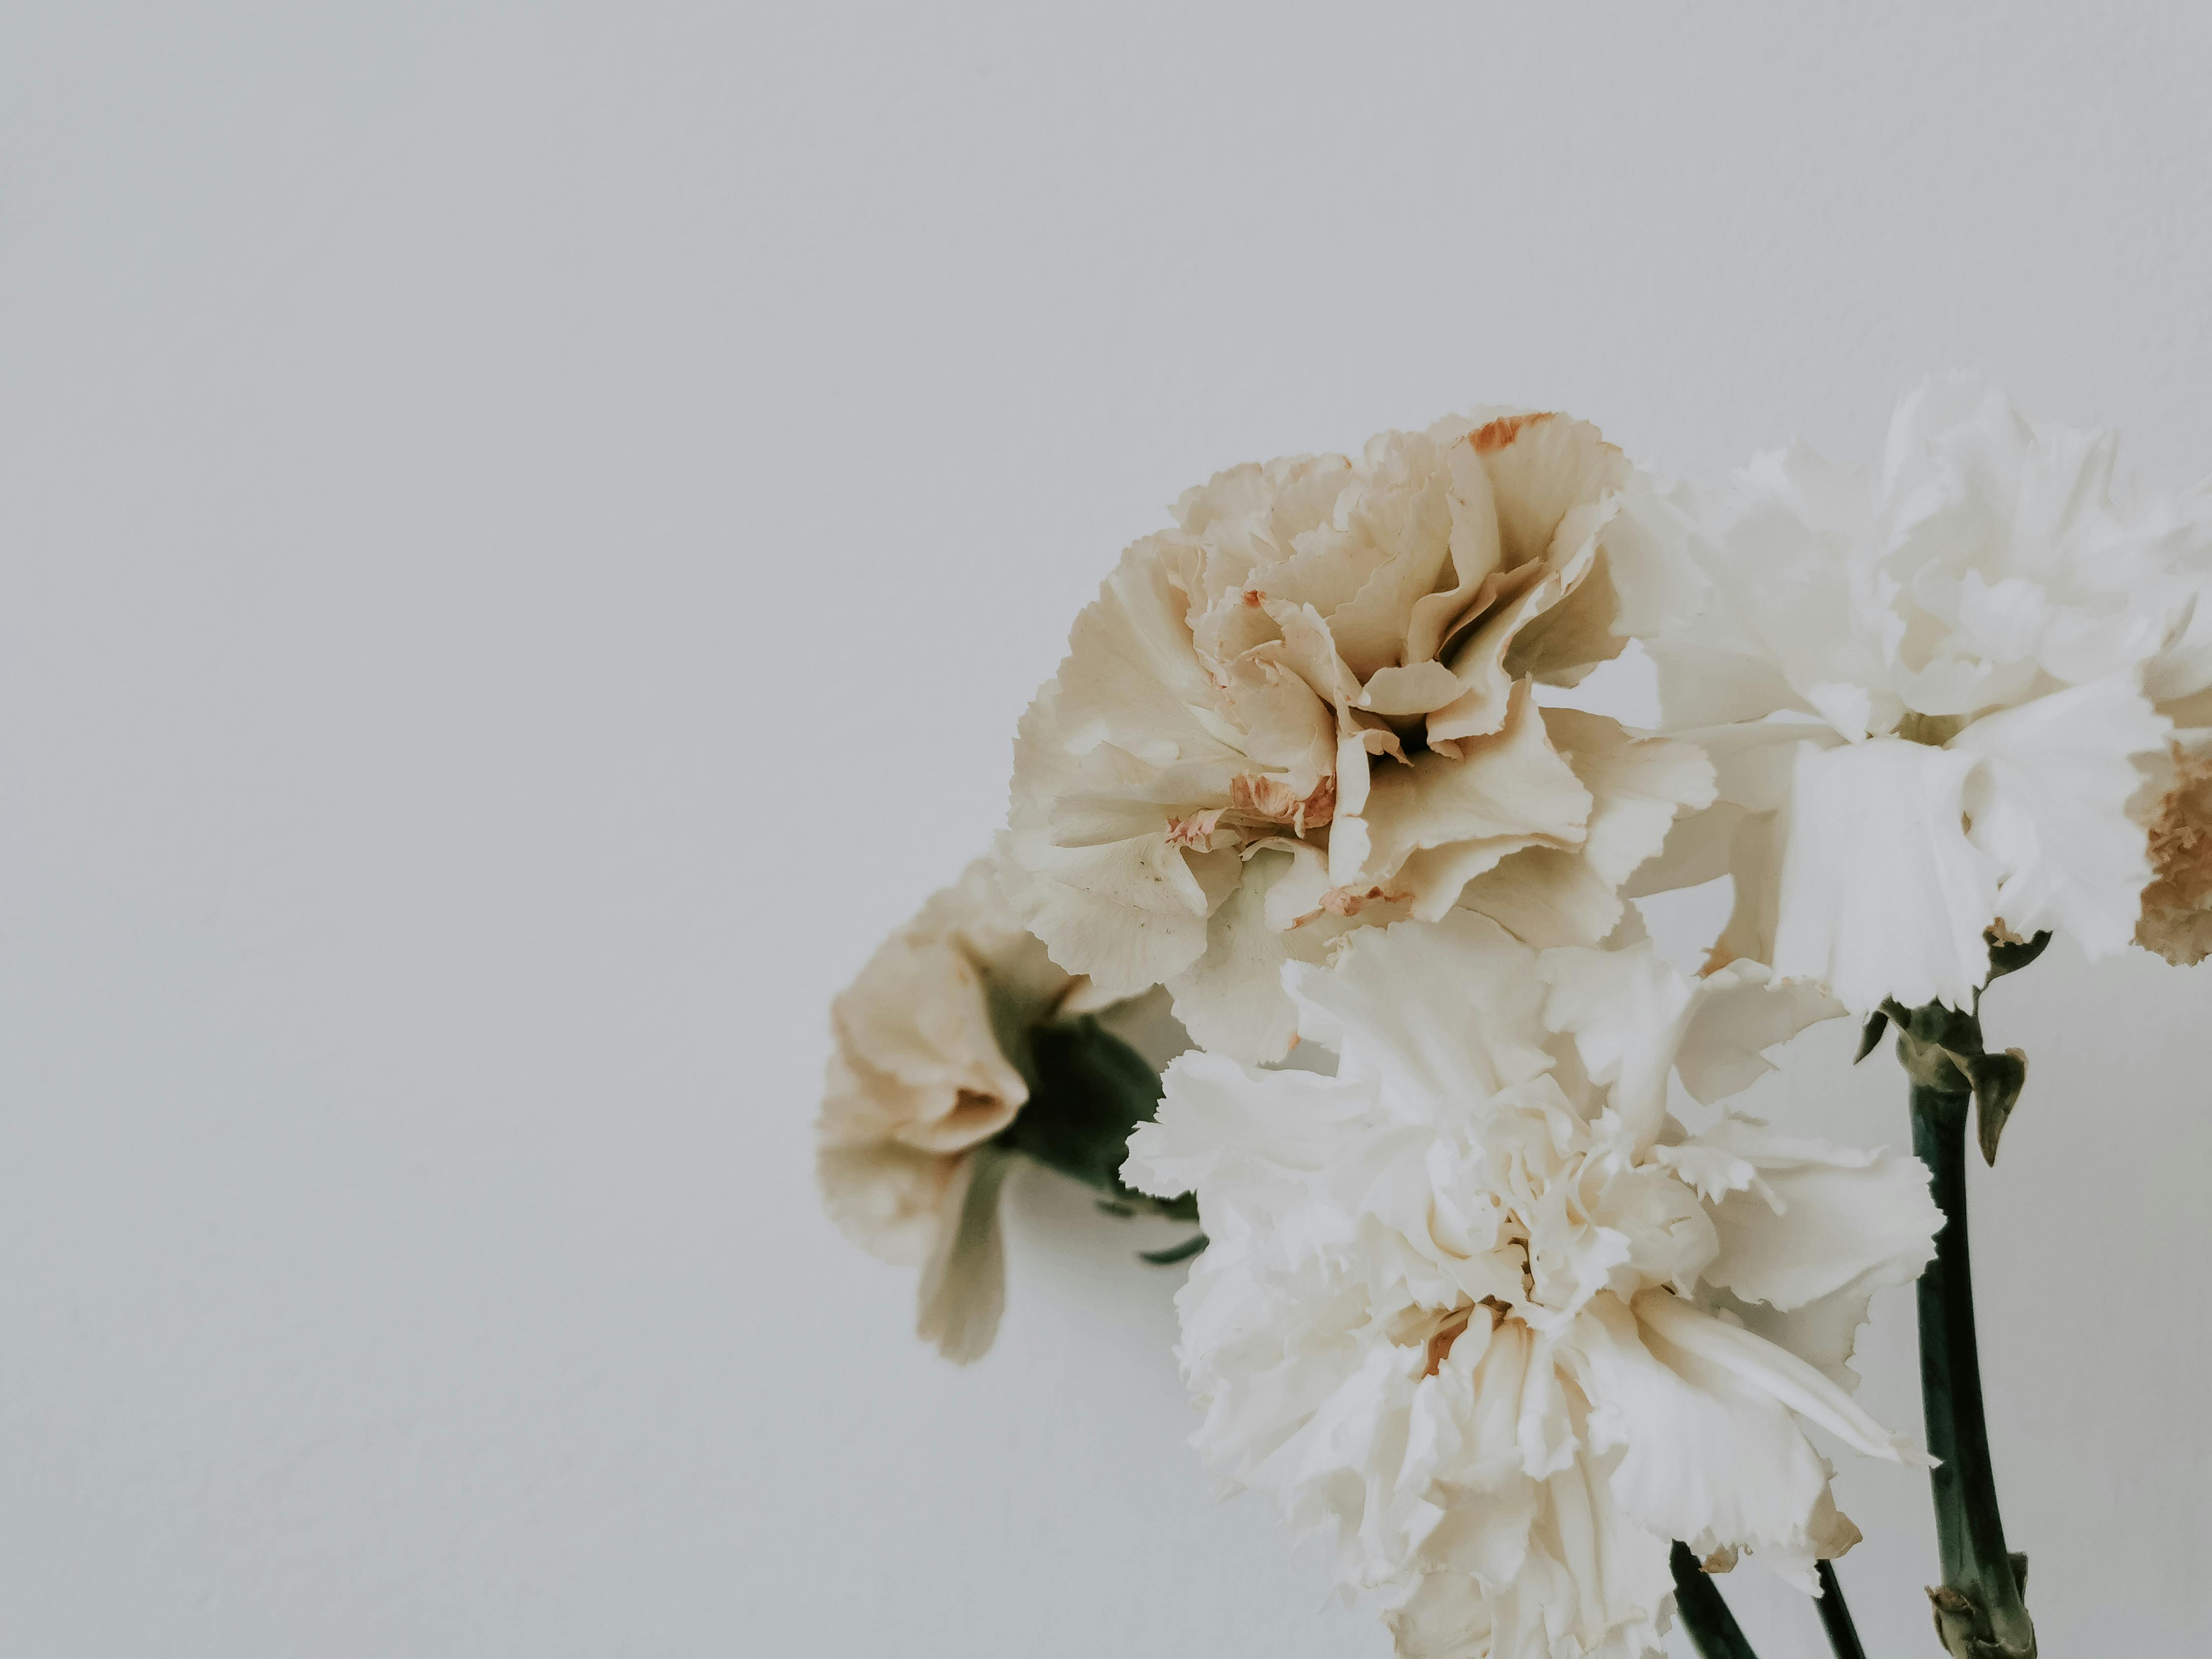 Bó hoa (Bouquet): Bó hoa tươi tắn và xinh đẹp là món quà tuyệt vời mà bạn có thể dành tặng cho người thân yêu của mình. Hãy cùng chiêm ngưỡng những bó hoa đầy màu sắc và tình cảm này để cảm nhận được sức sống và tình yêu đang tồn tại chung quanh chúng ta.